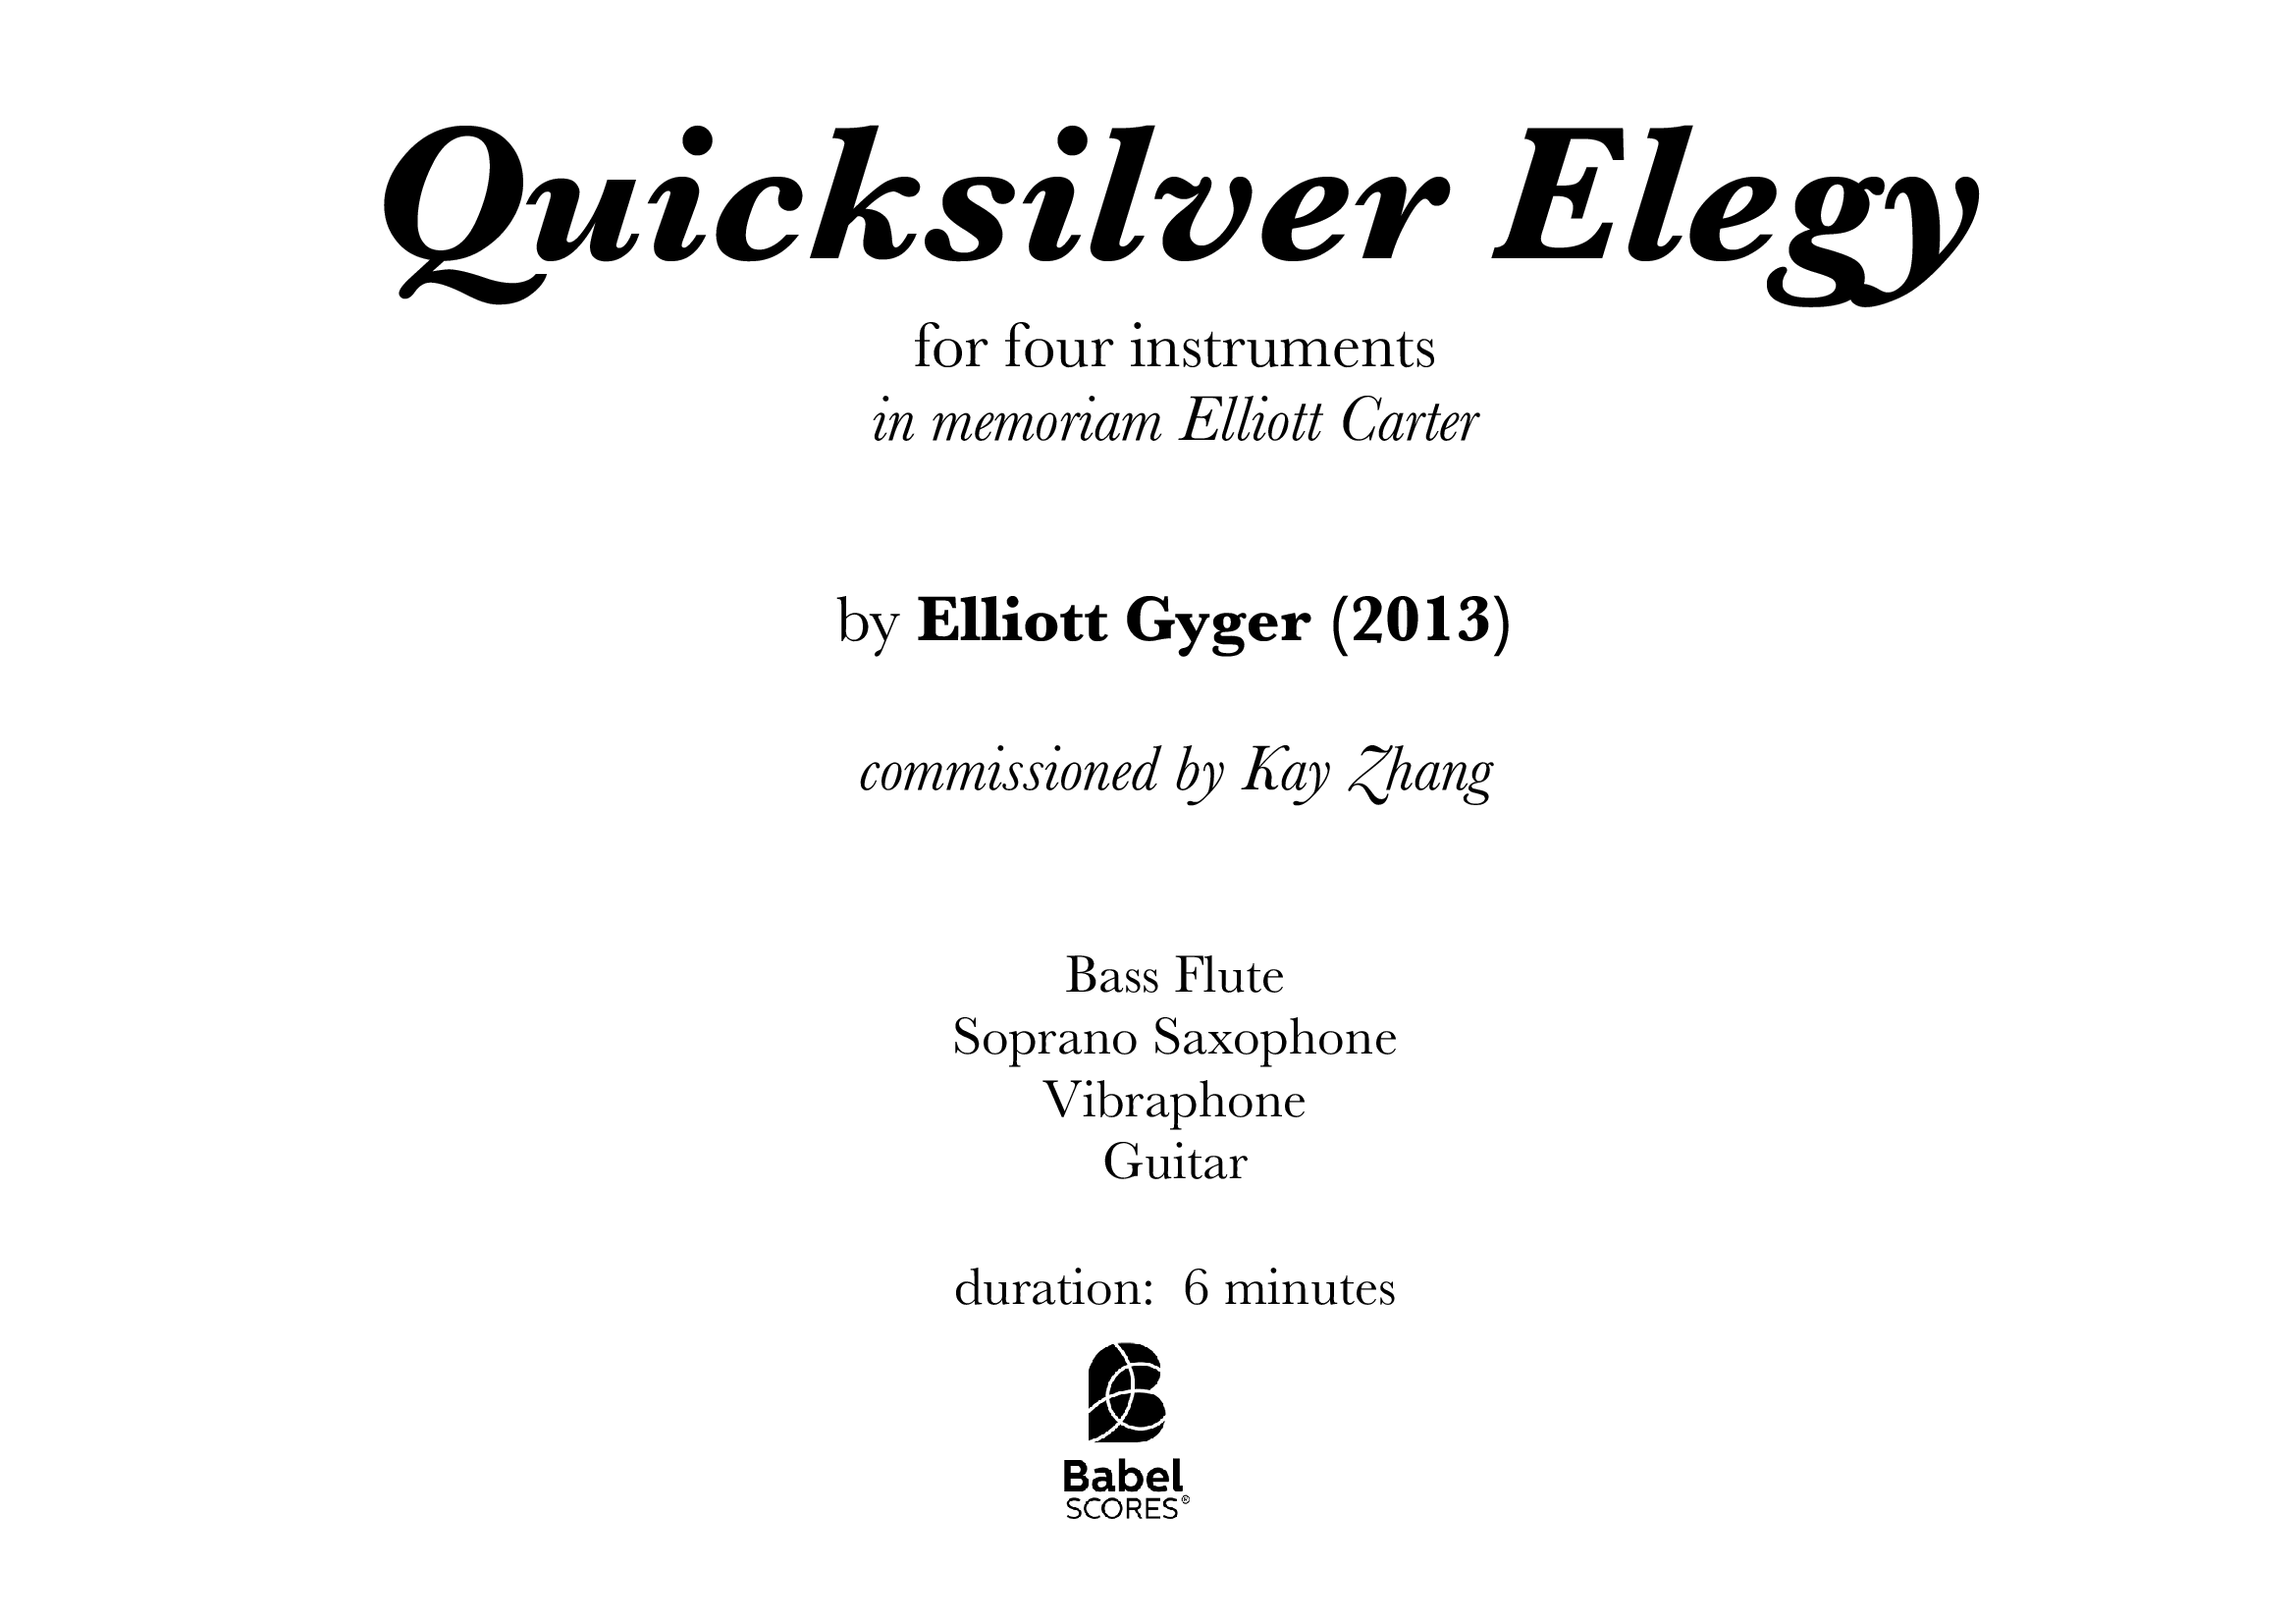 Quicksilver Elegy A4 z 3 1 625